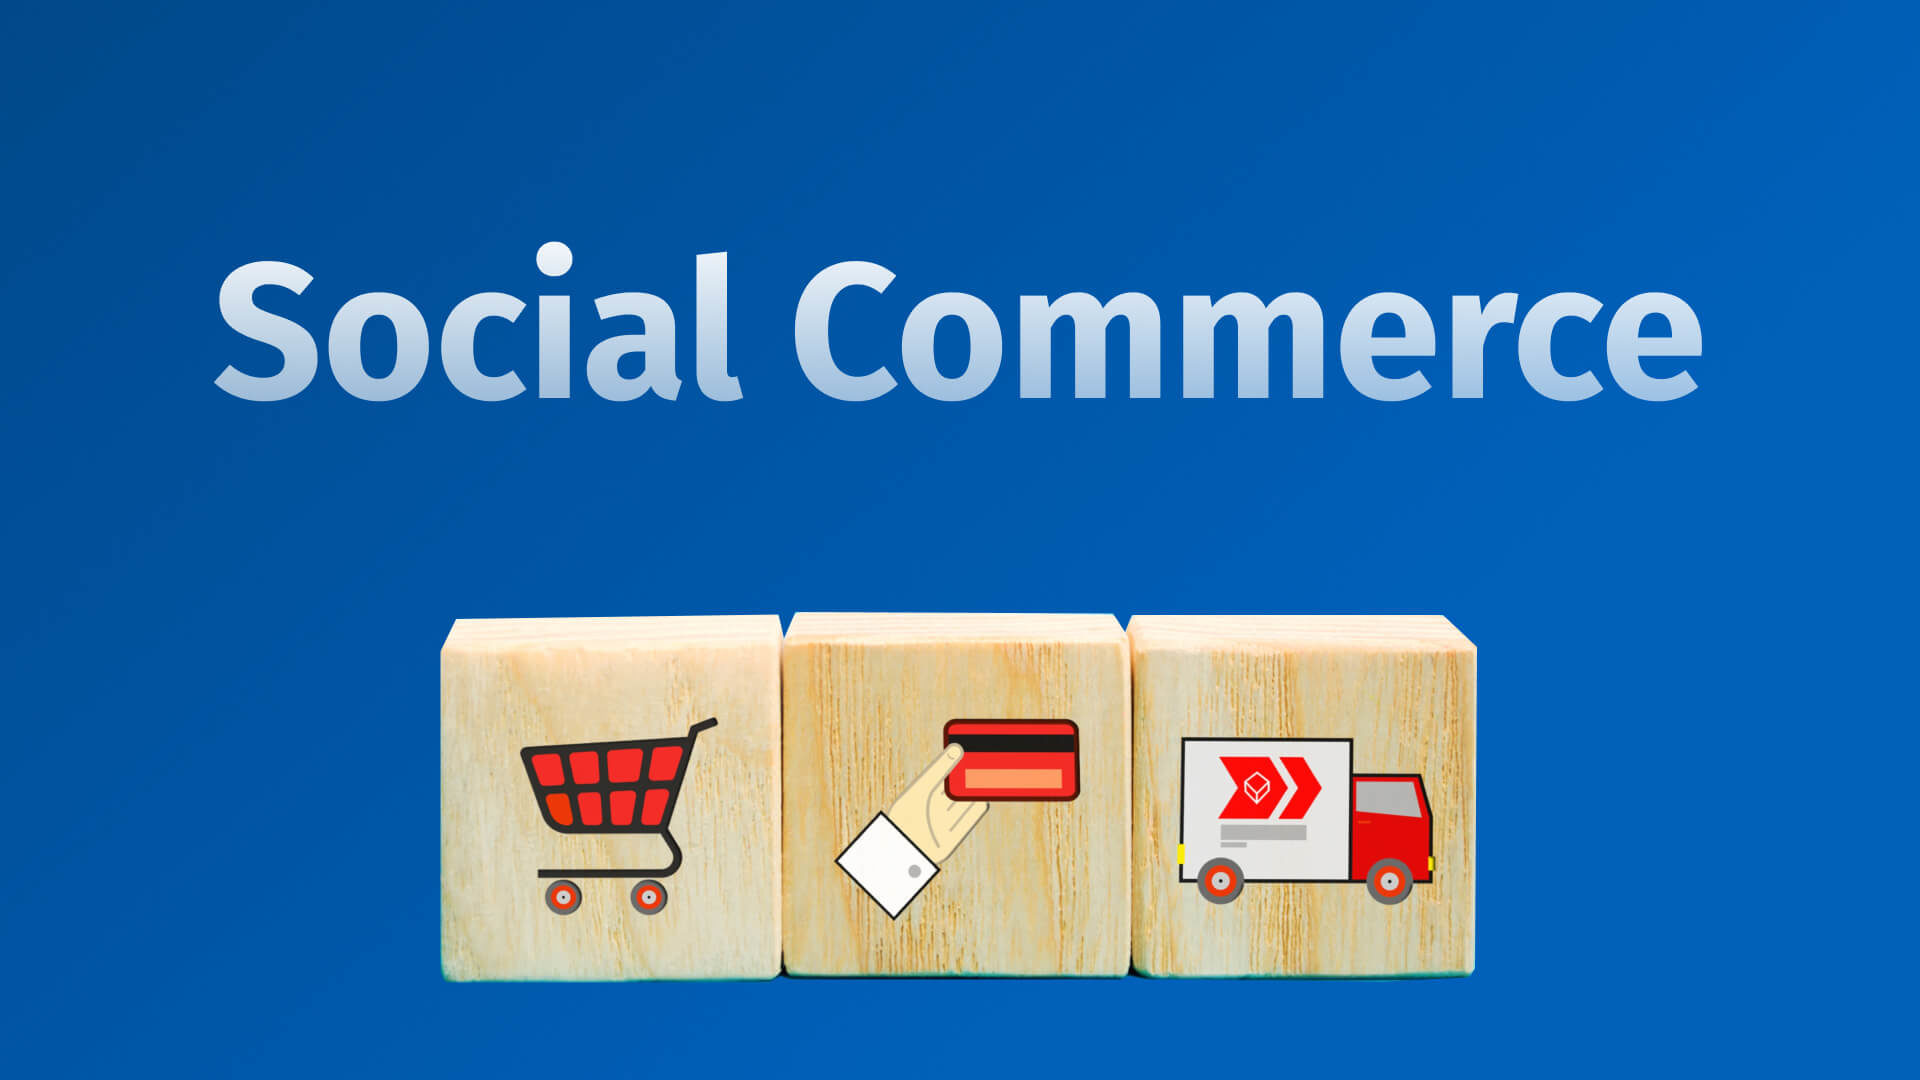 Social Commerce como usar esta tendencia para vender mais